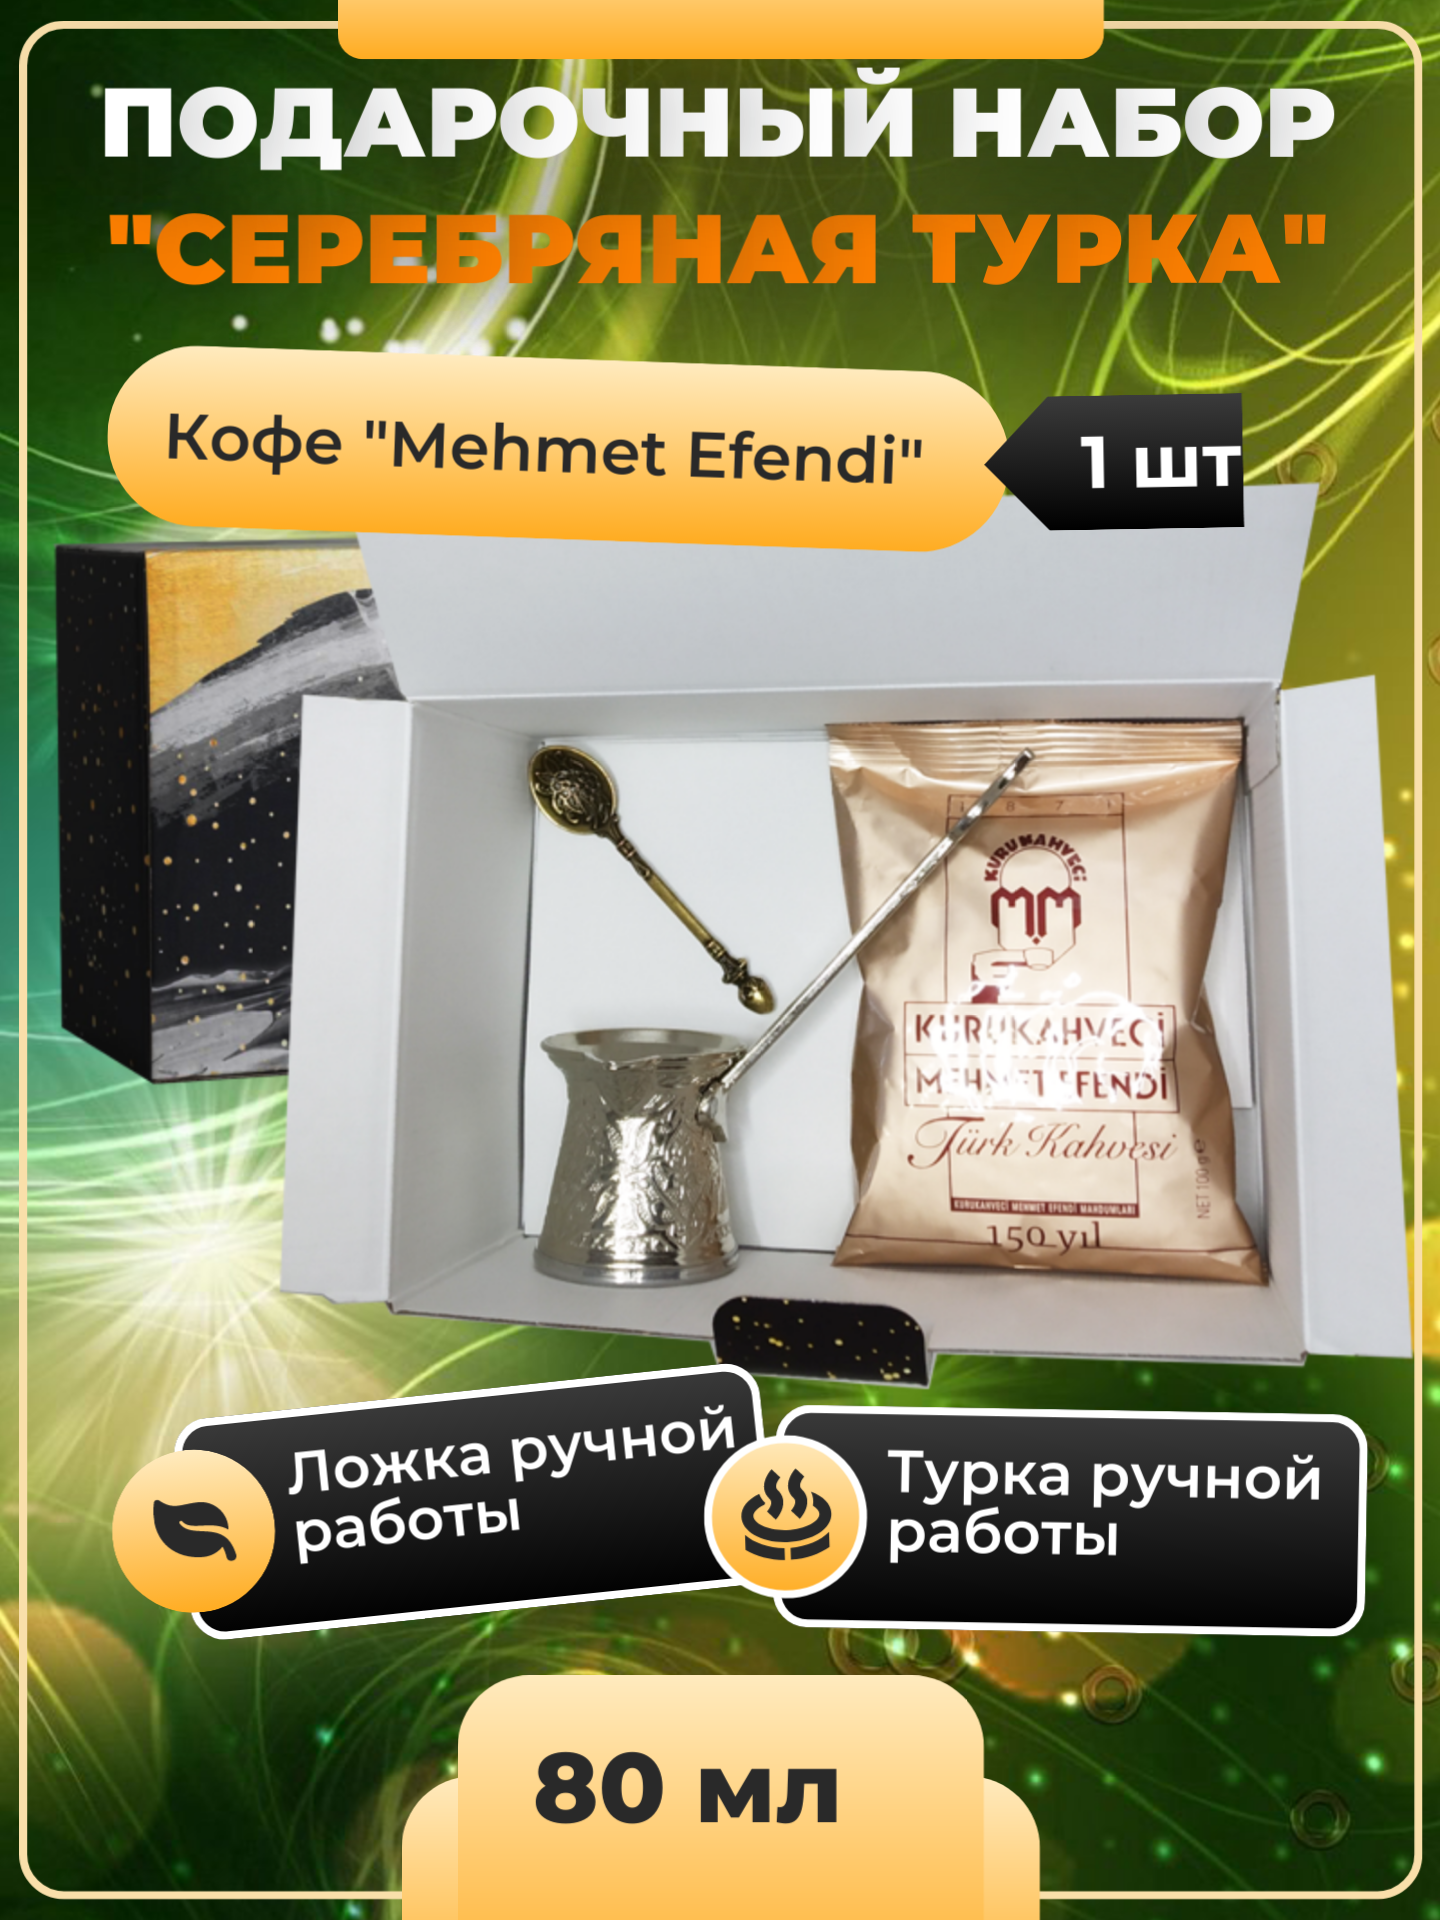 Подарочный набор "Серебряная турка" (Турка 100 мл, ложка, кофе молотый Mehmet Efendi) на новый год дракона, на любой праздник.